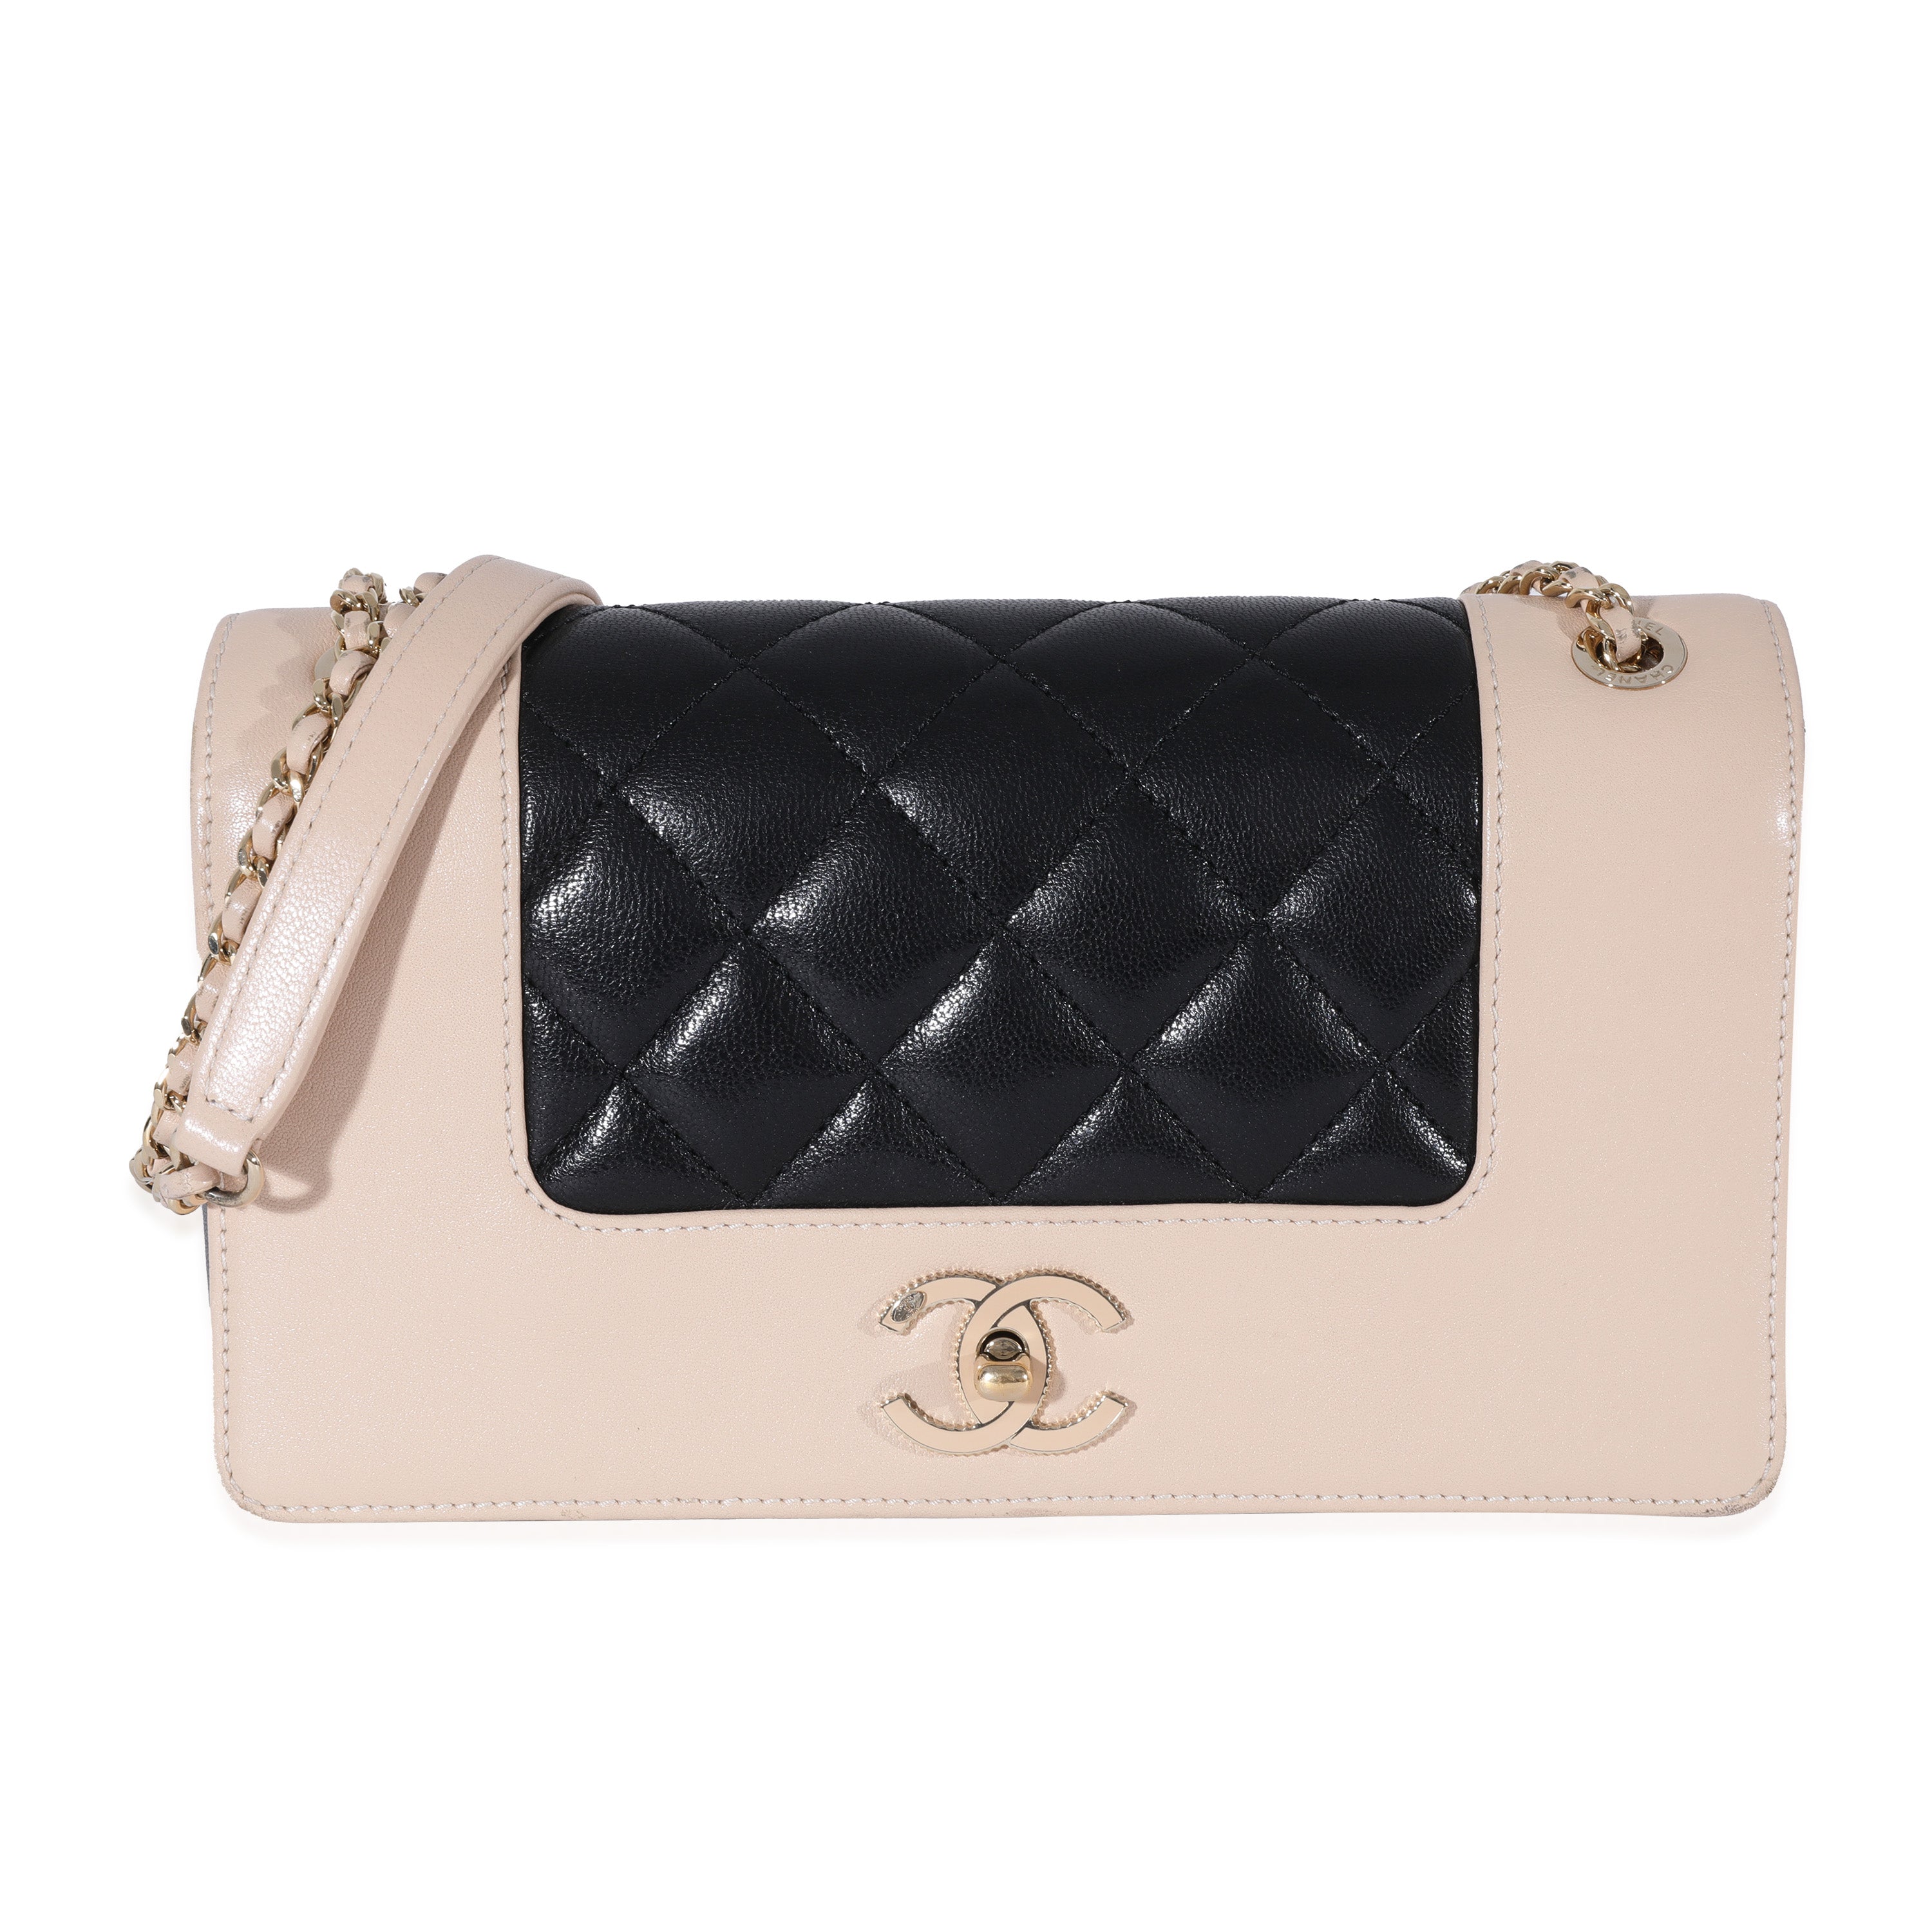 Chanel Bicolor Sheepskin Mademoiselle Vintage Flap Bag